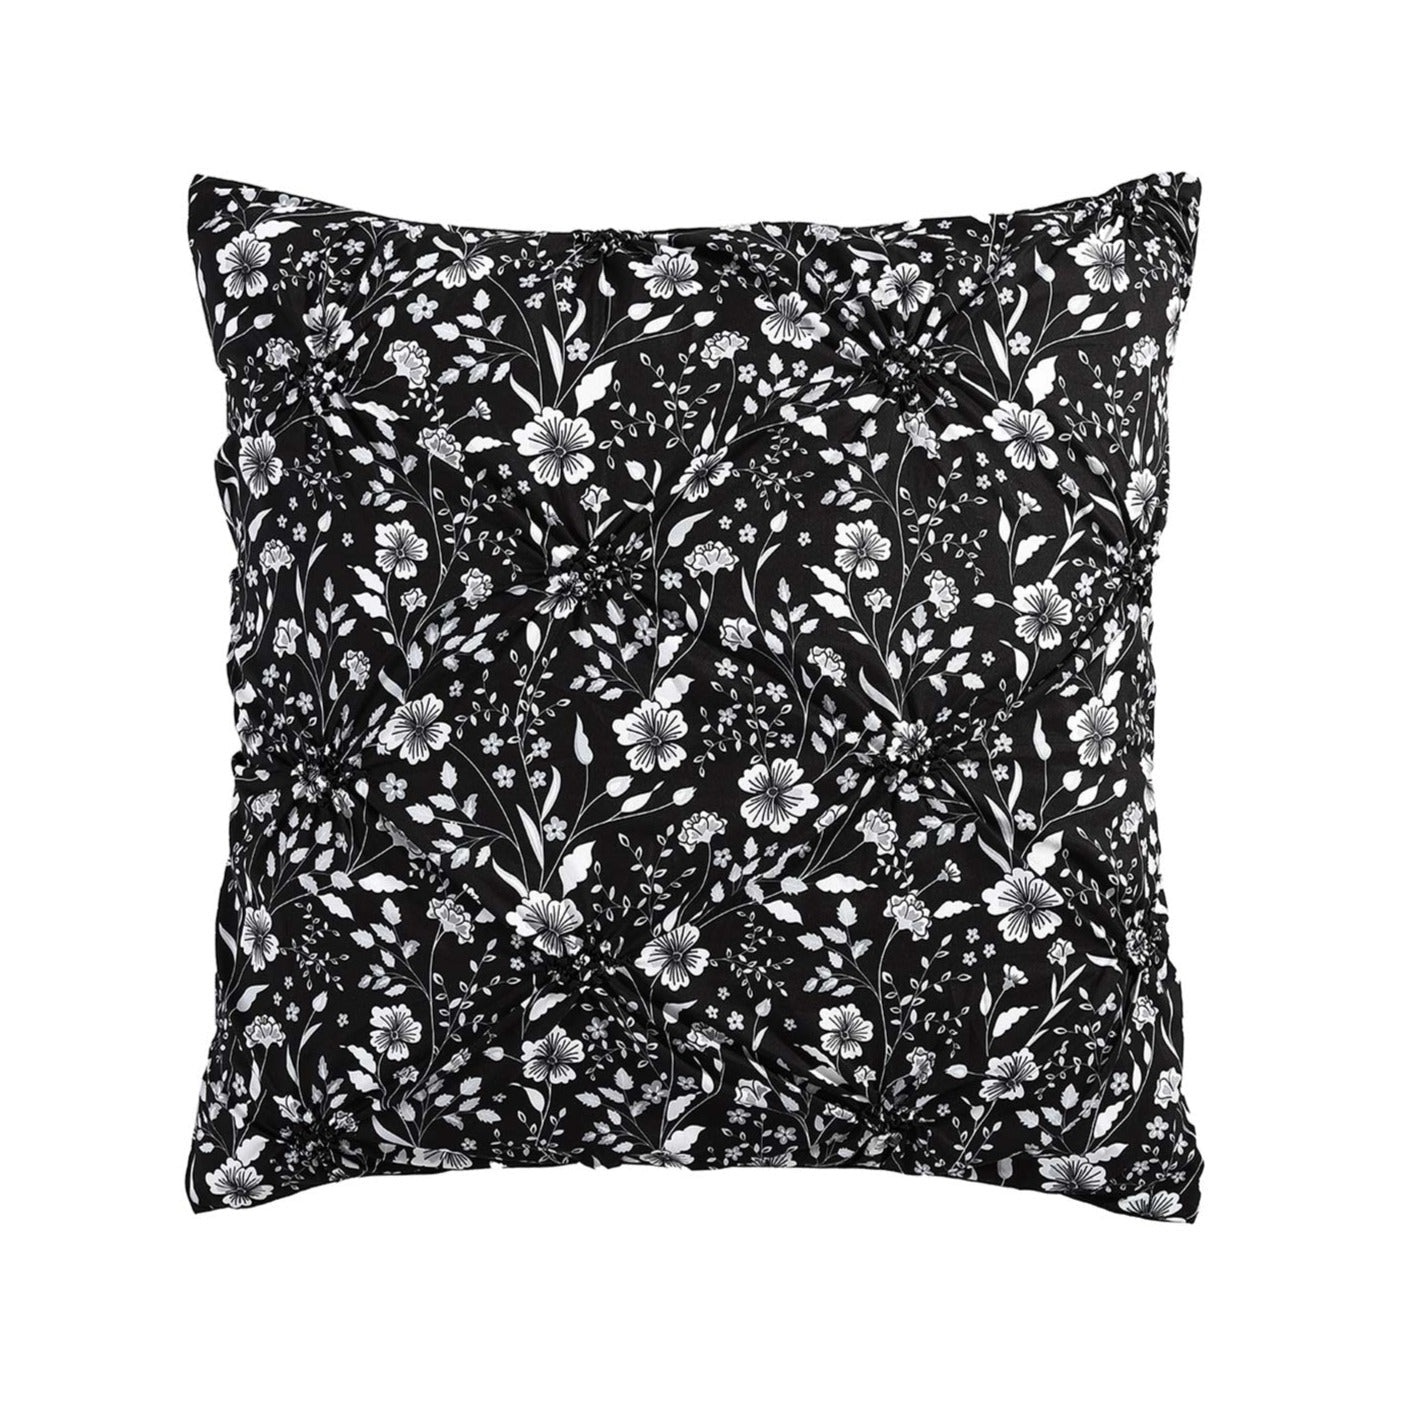 Leisel Black European Pillowcase by Logan and Mason Platinum